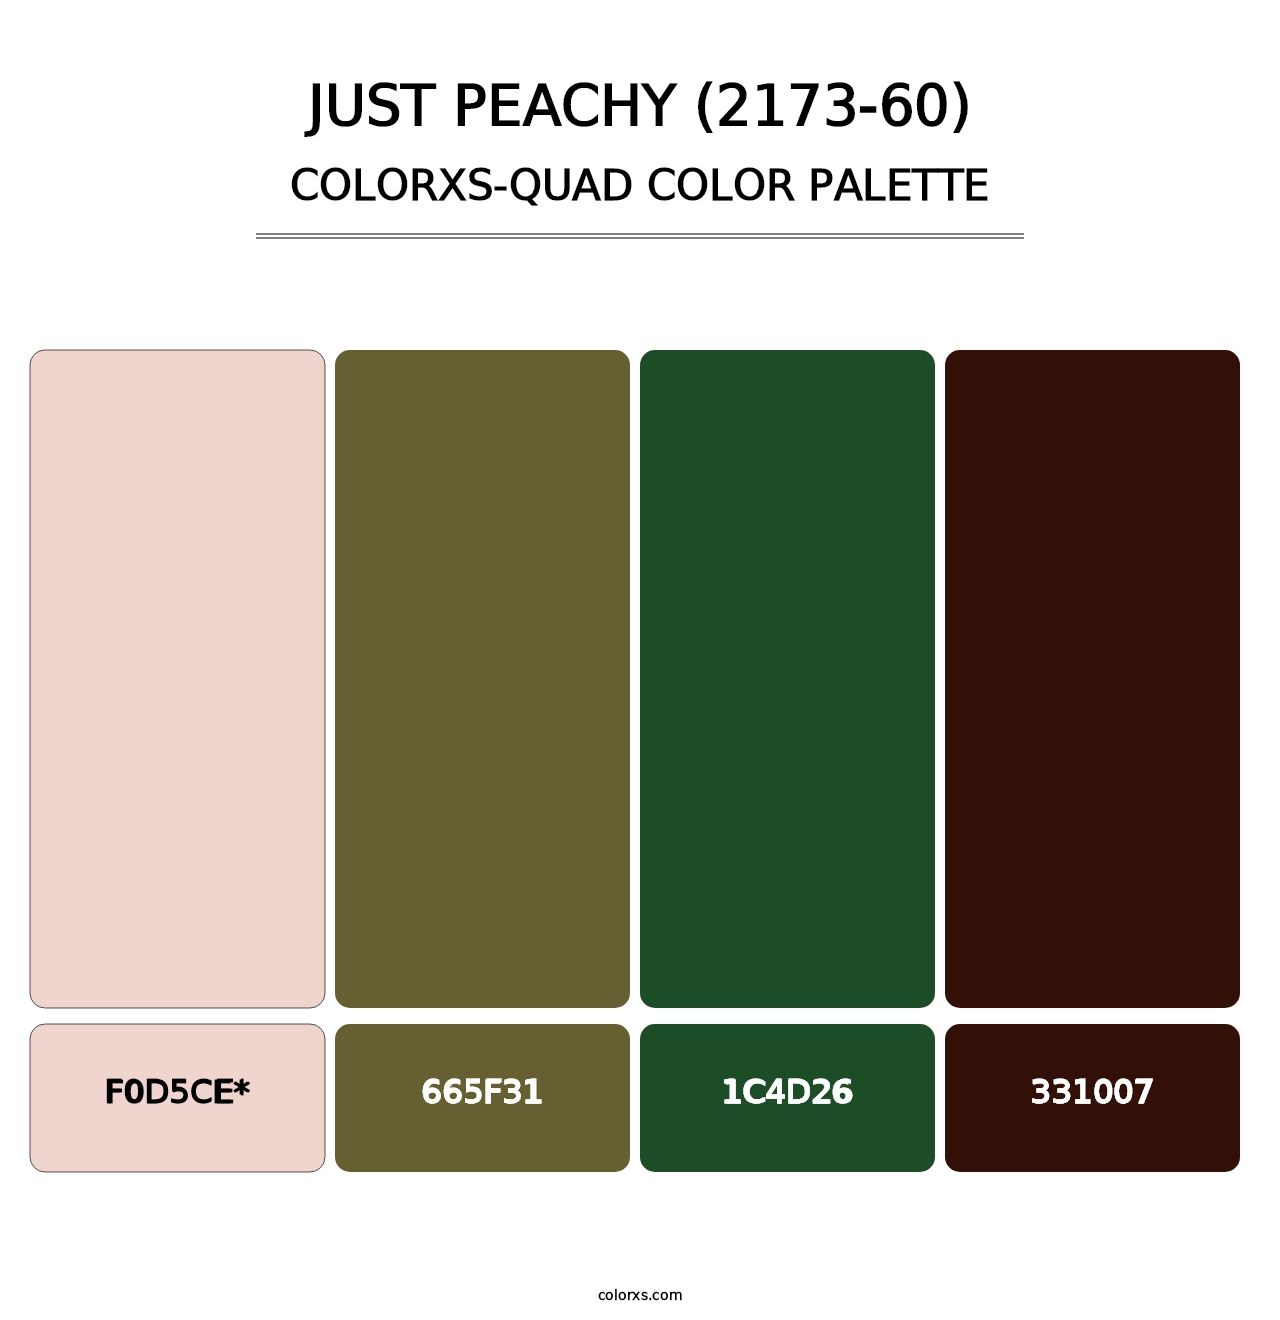 Just Peachy (2173-60) - Colorxs Quad Palette